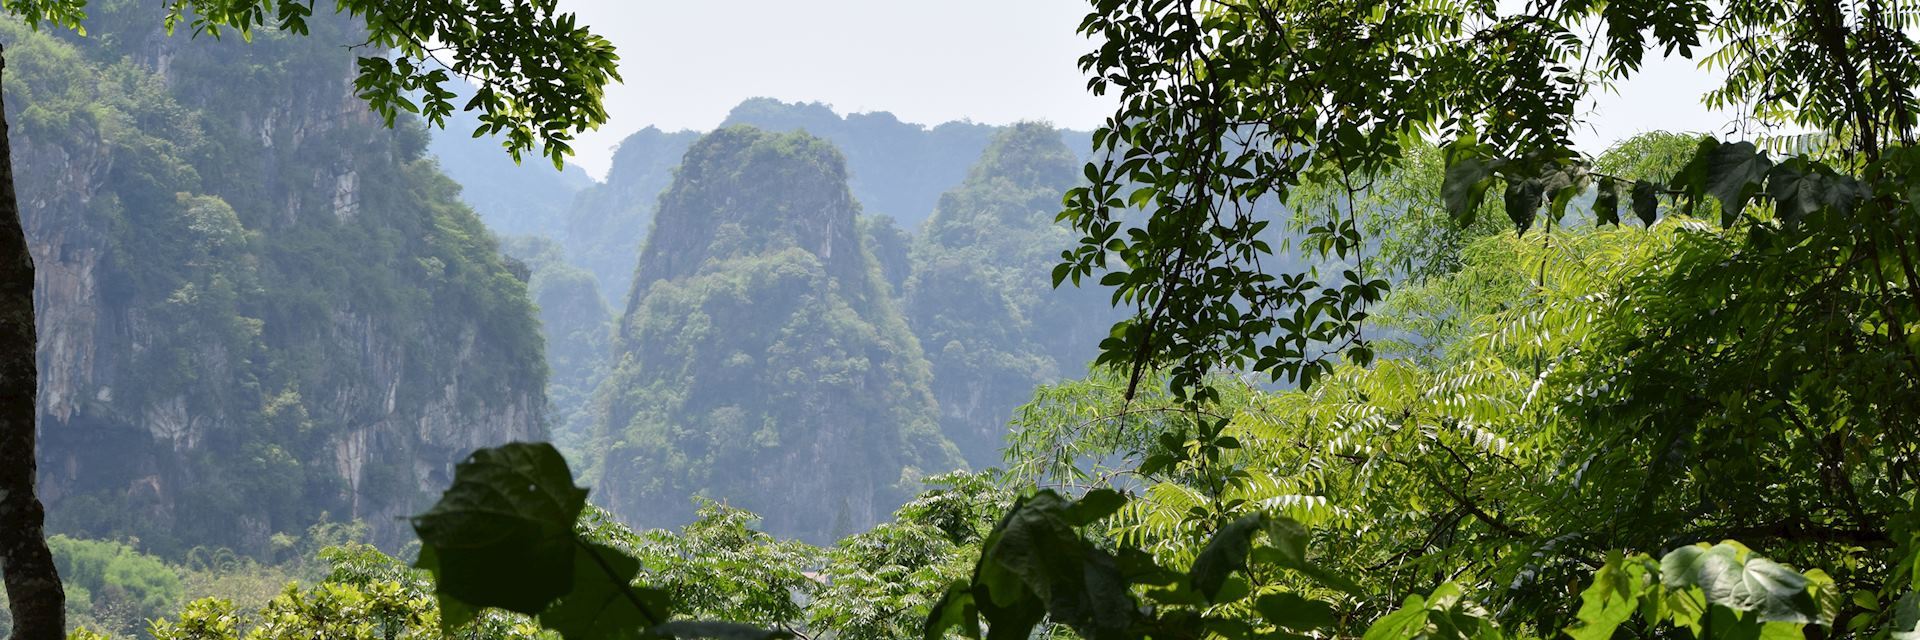 Scenery around Vieng Xai